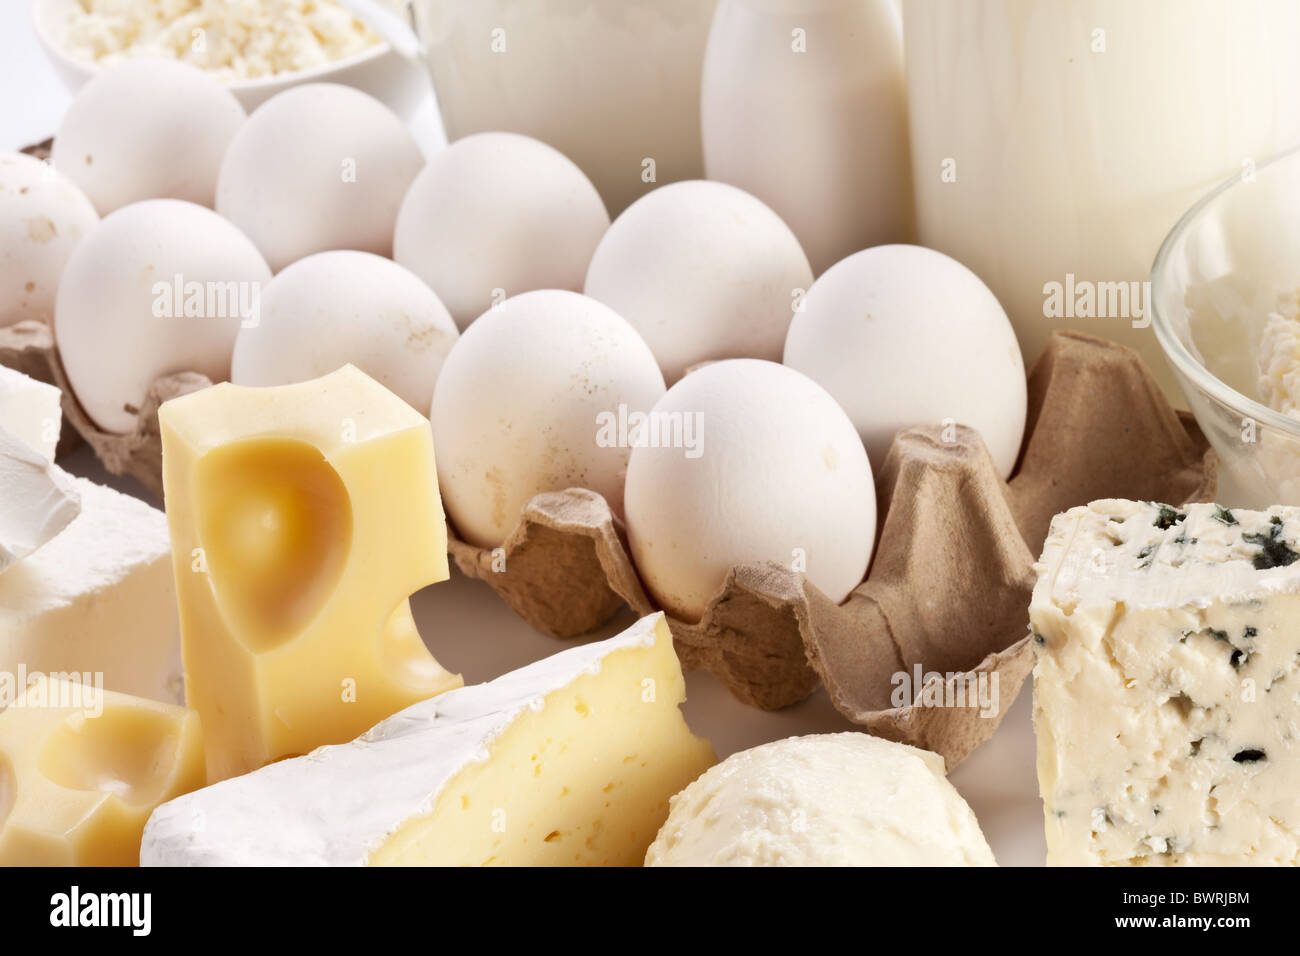 Prodotti proteici: formaggio, panna, latte, uova. Su uno sfondo bianco. Foto Stock